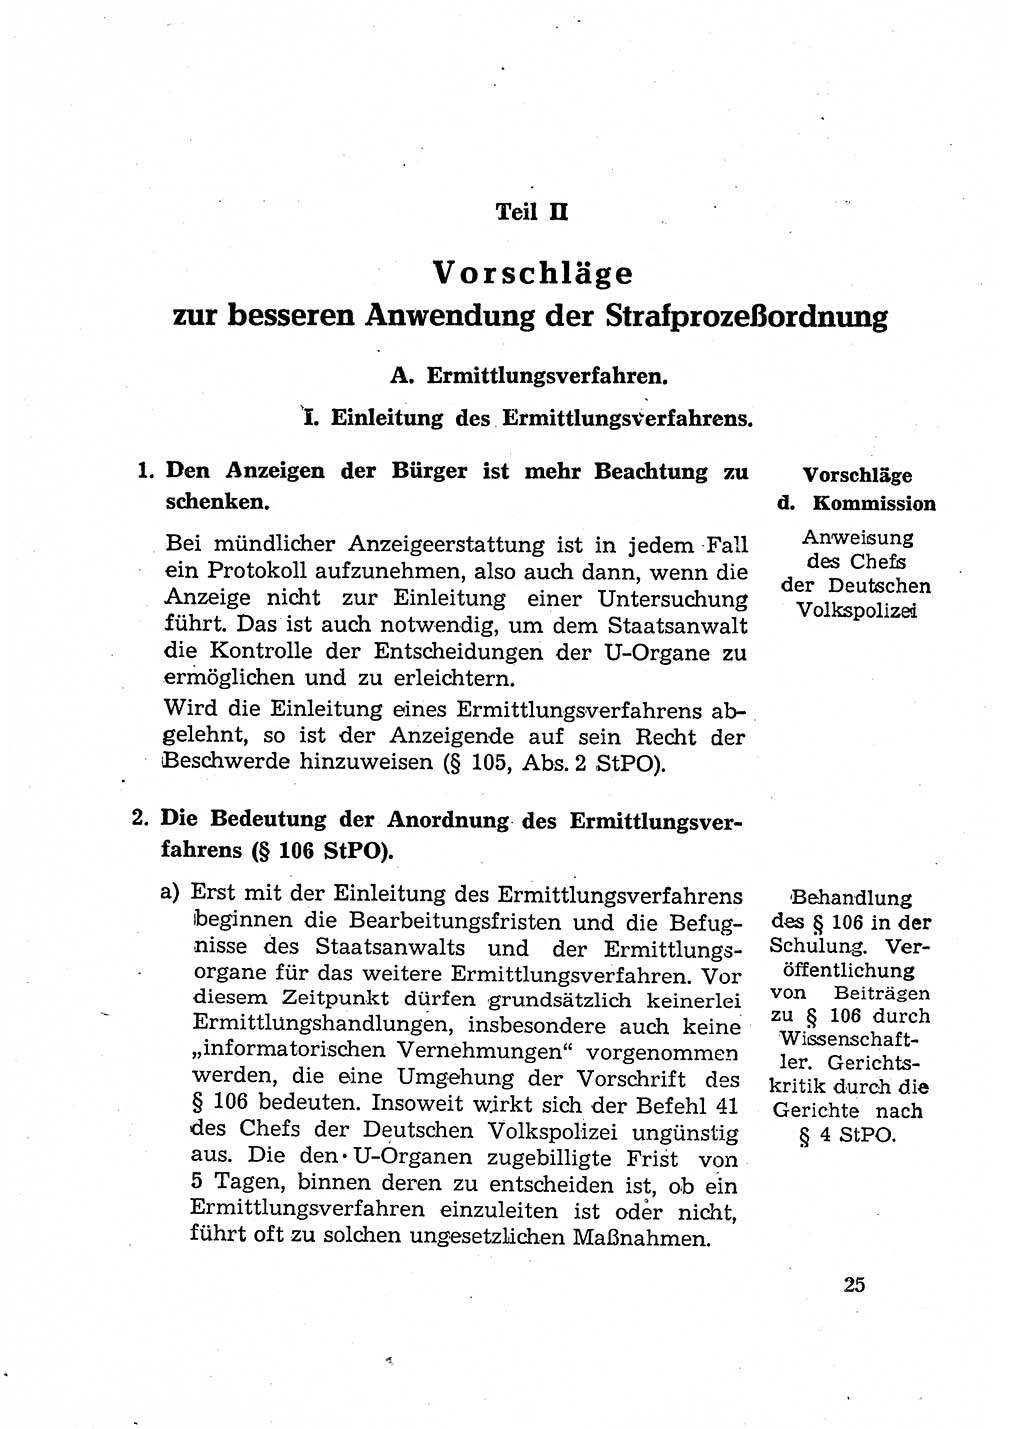 Bericht der Kommission zur Überprüfung der Anwendung der StPO (Strafprozeßordnung) [Deutsche Demokratische Republik (DDR)] 1956, Seite 25 (Ber. StPO DDR 1956, S. 25)